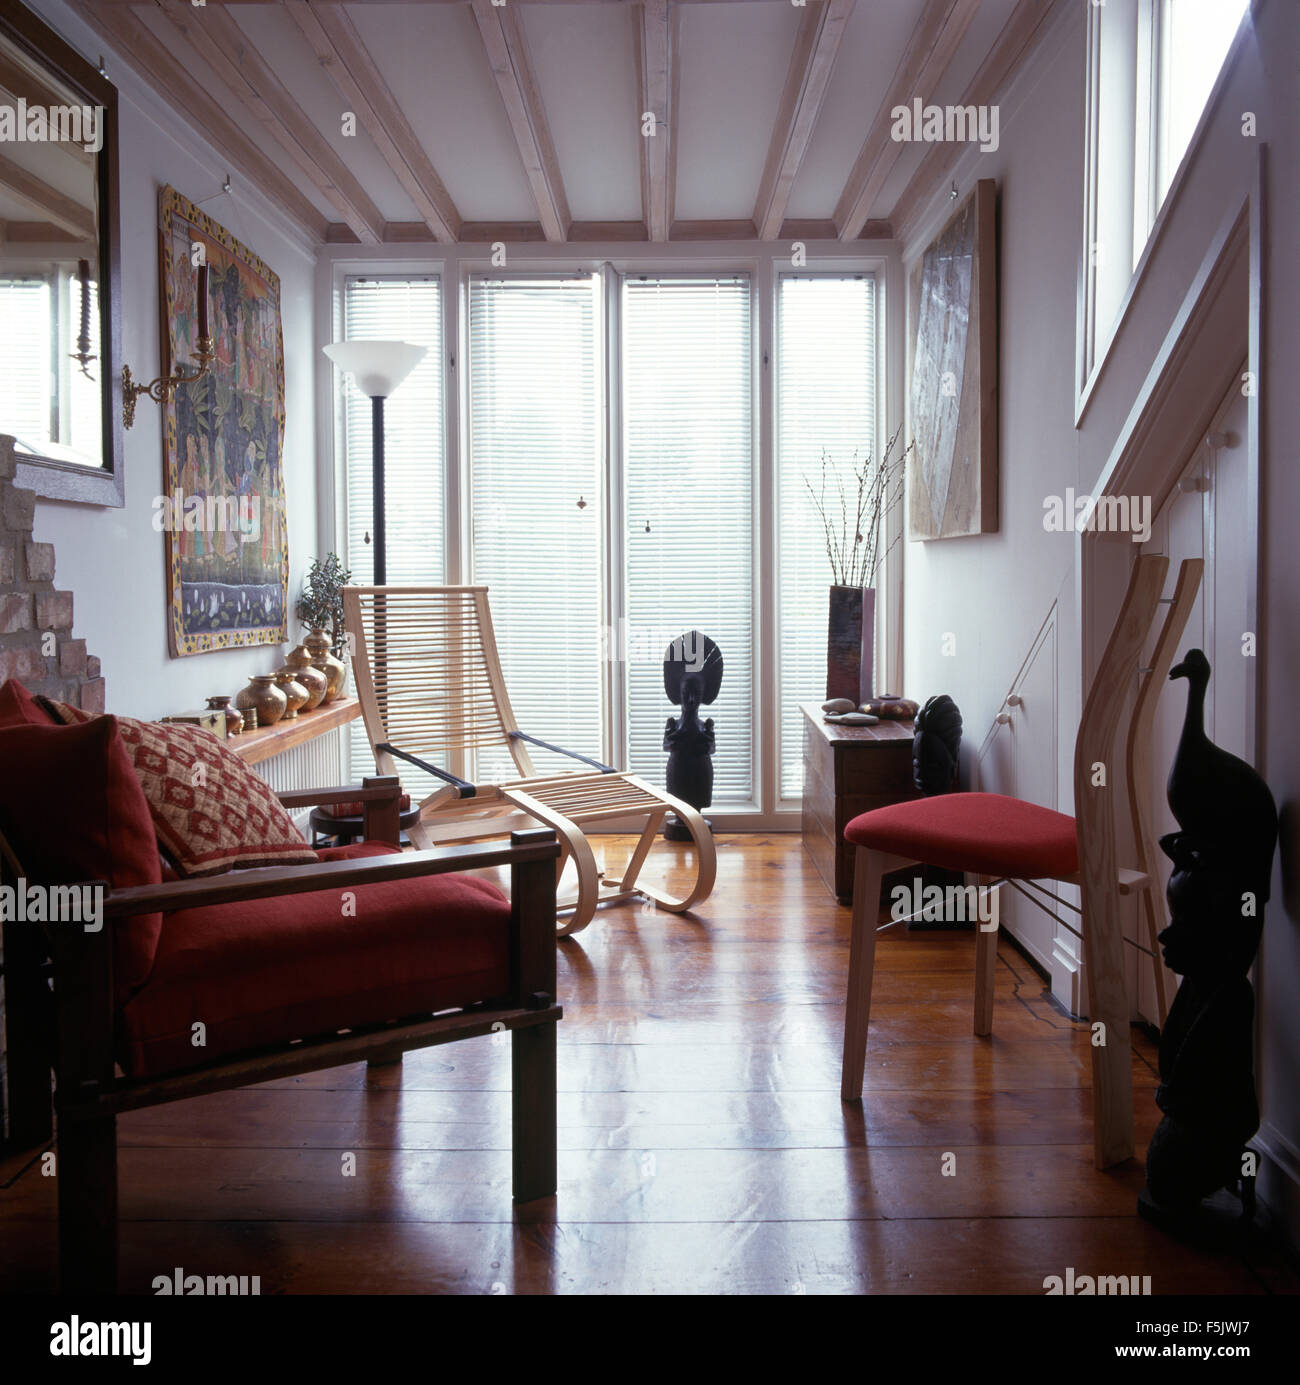 Piso de madera pulida en una casa blanca salón con muebles de madera clara y ventanas del suelo al techo. Foto de stock